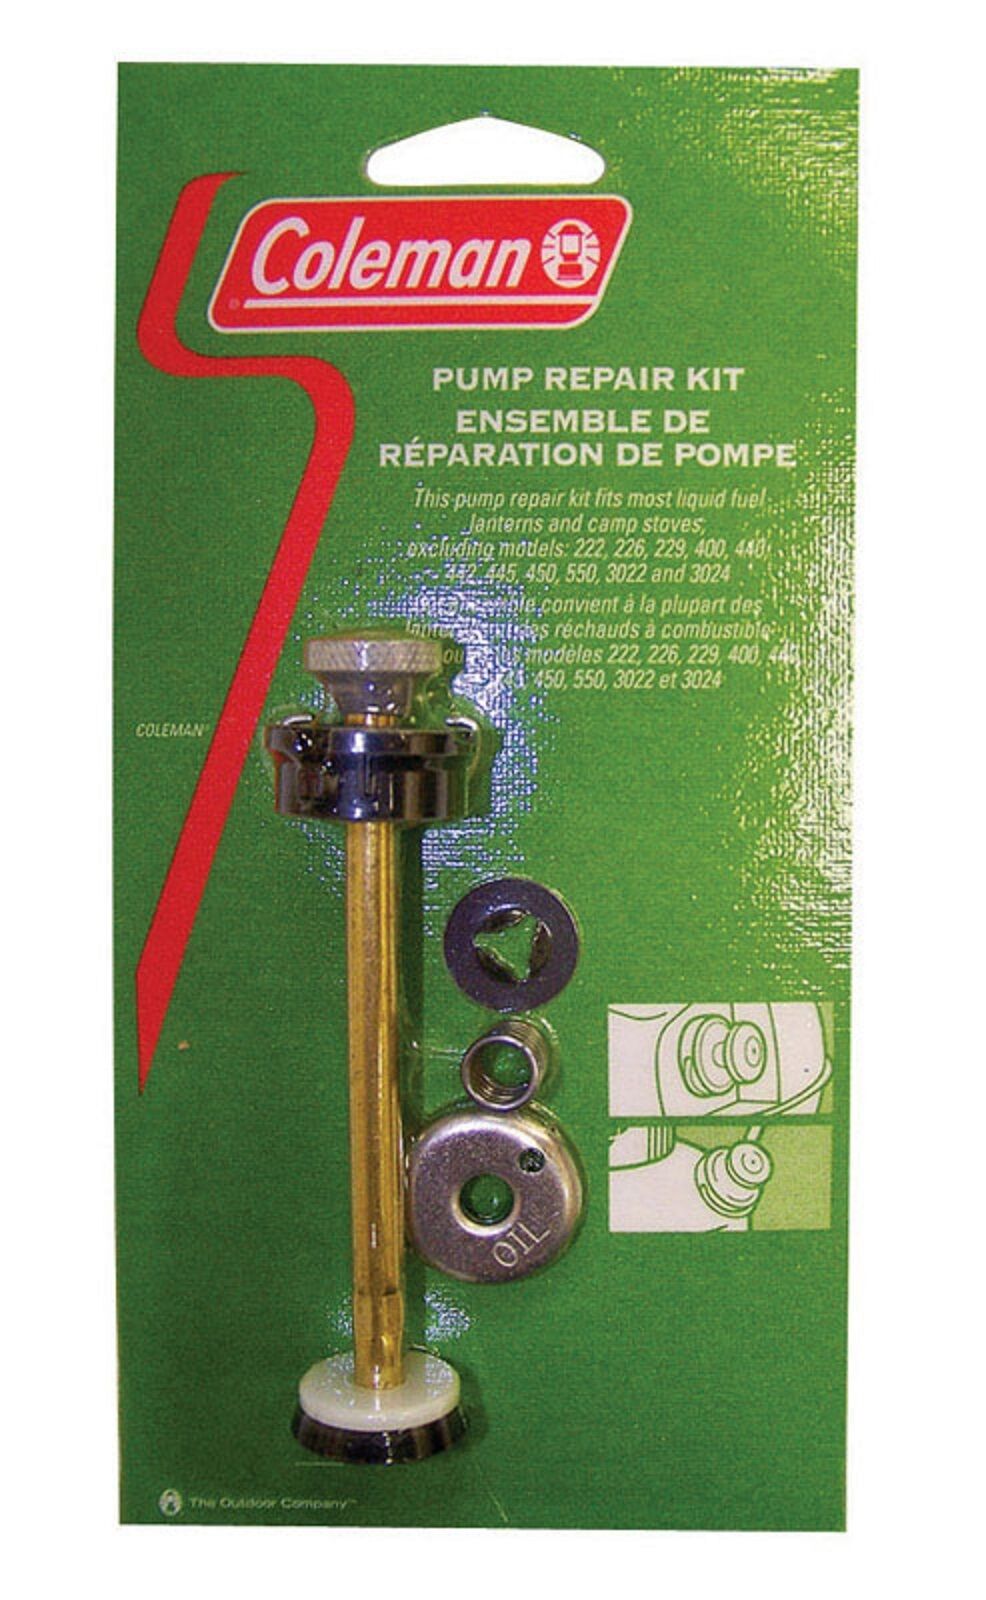 Coleman Pump Repair Kit Replacement Parts Camp Stove Lantern New! # 3000005099